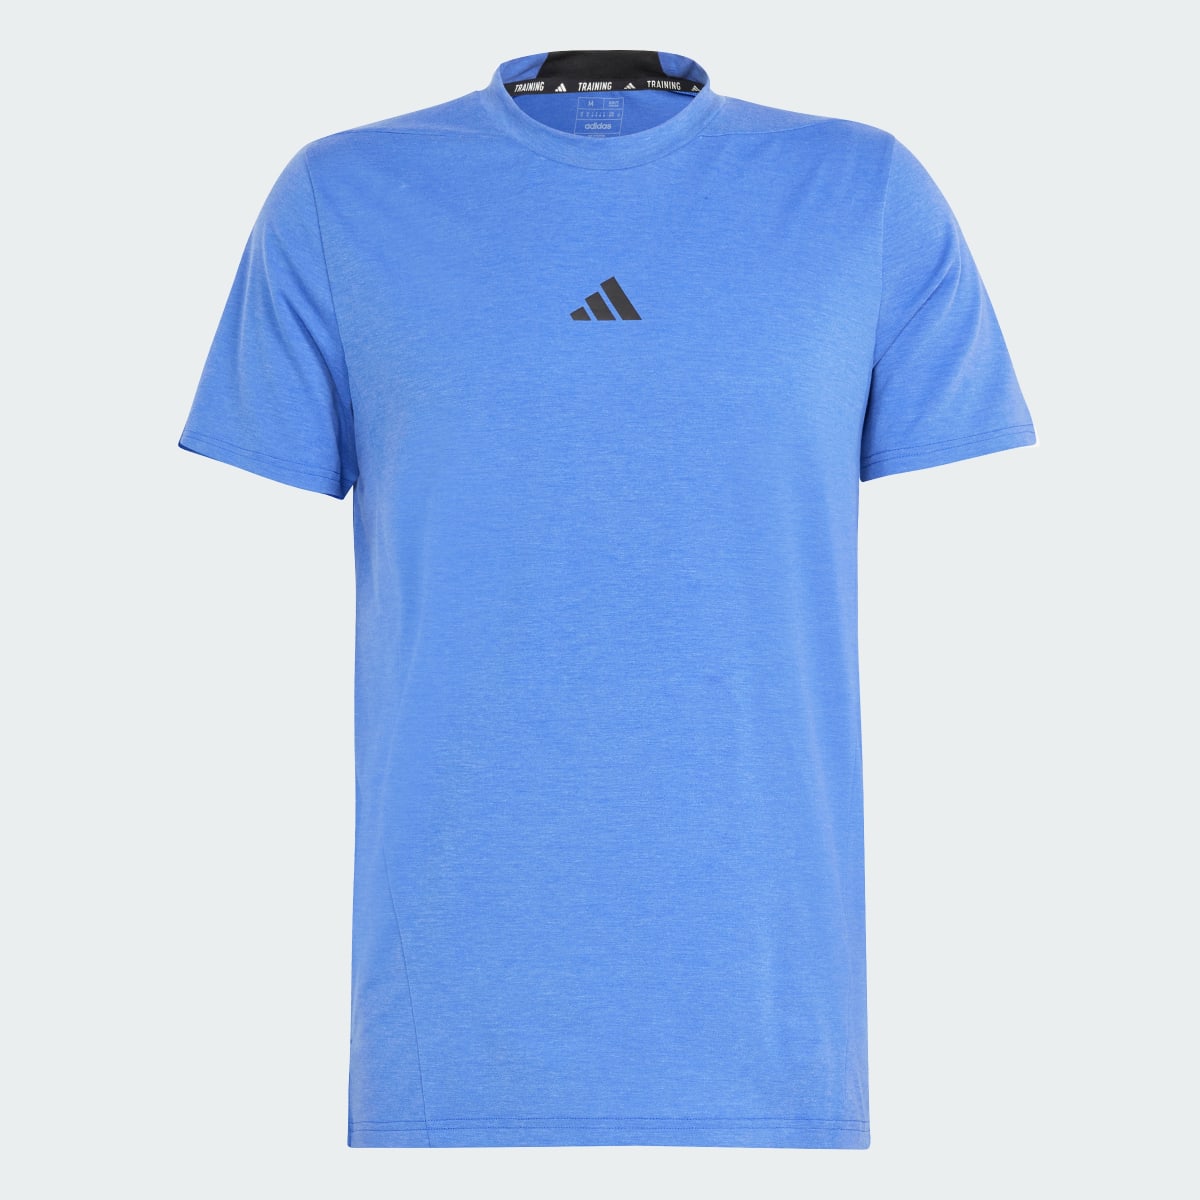 Adidas Camiseta Designed for Training Workout. 4